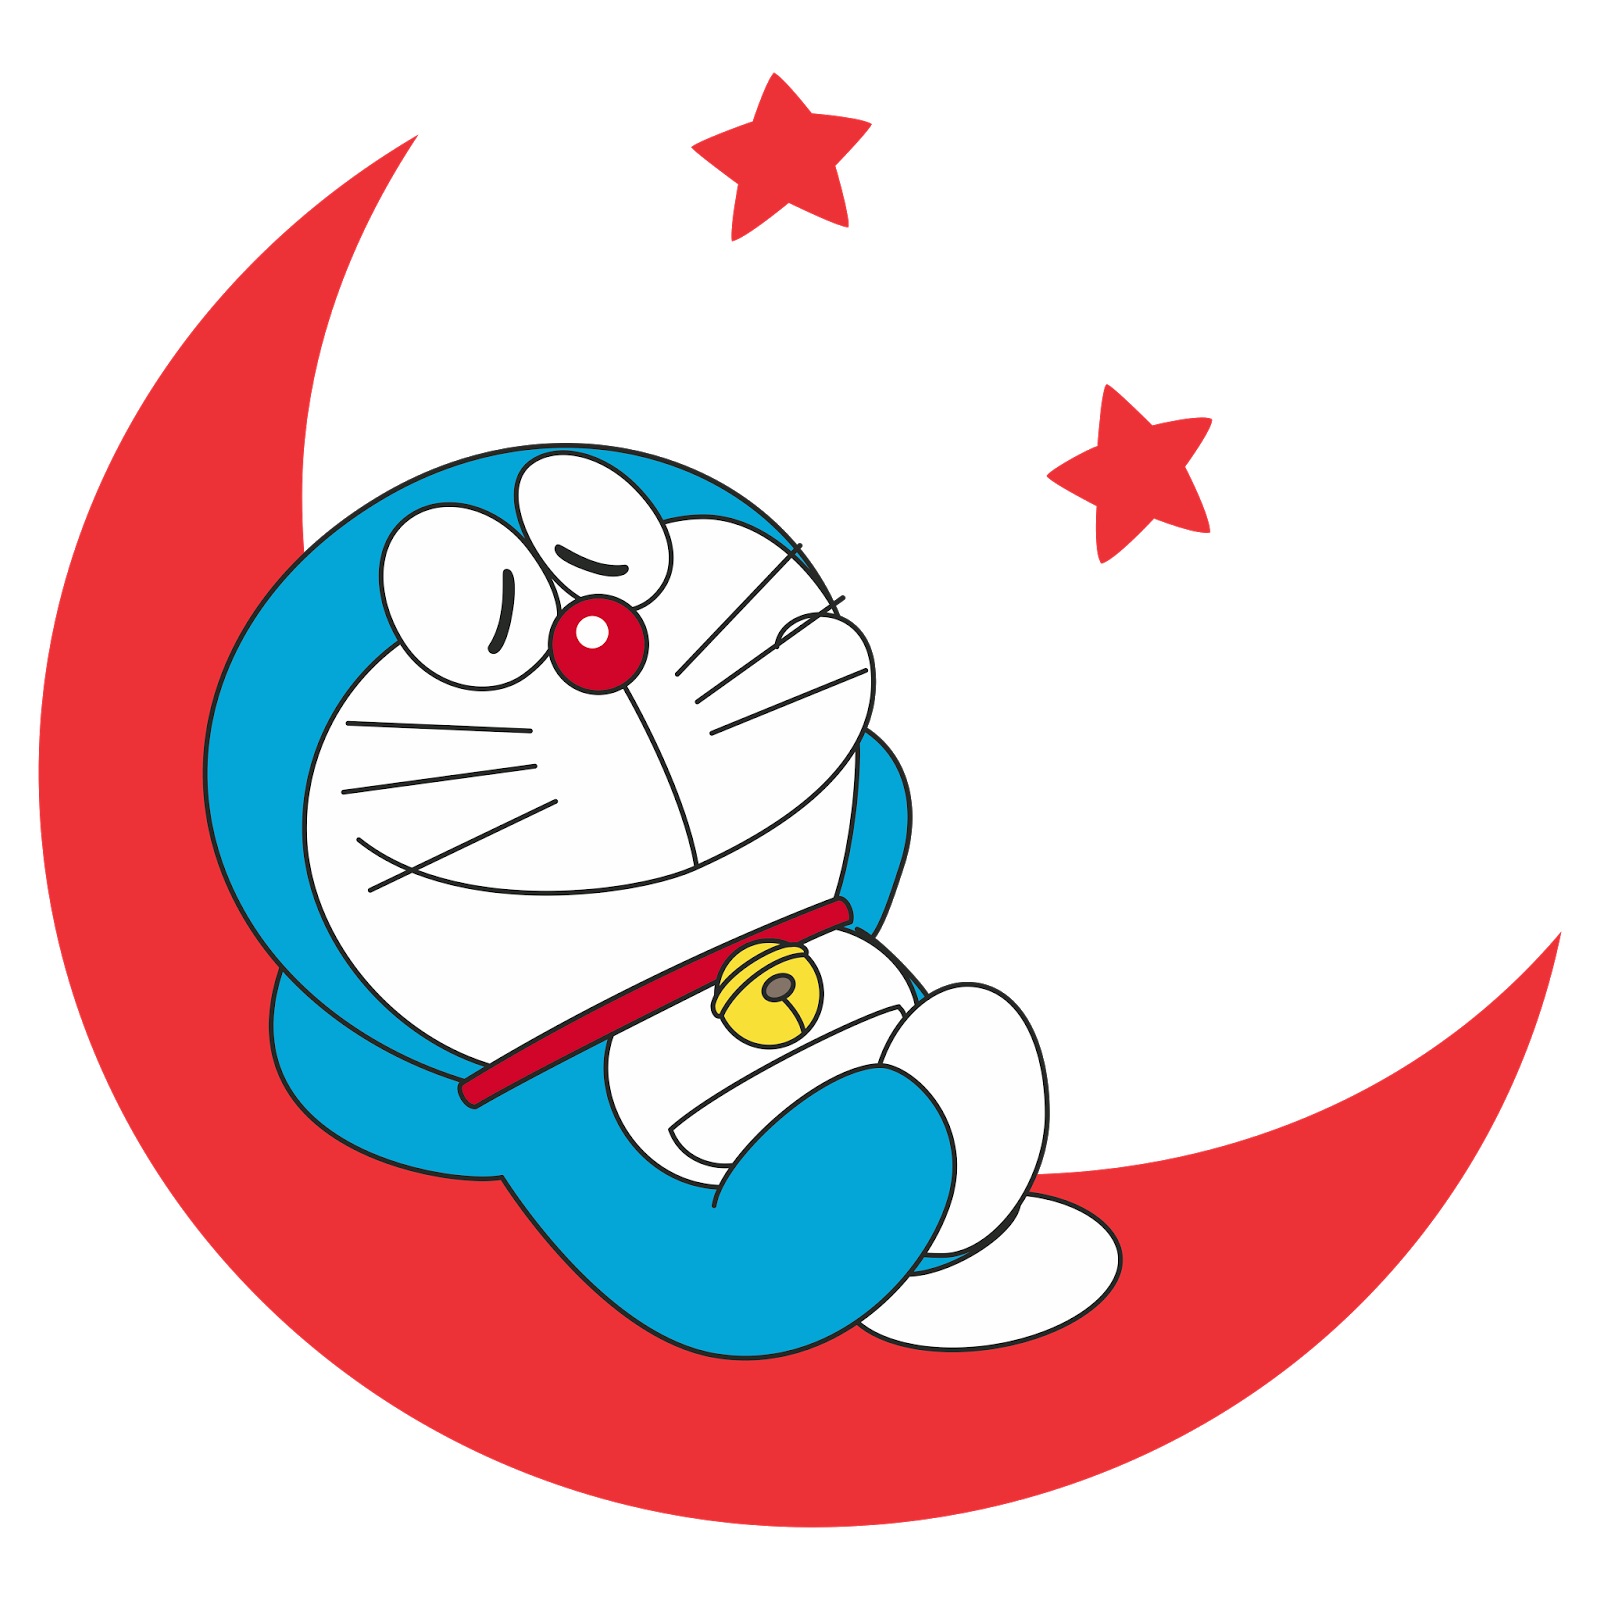 Hình ảnh avatar doremon đẹp cute dễ thương ngộ nghĩnh đáng yêu